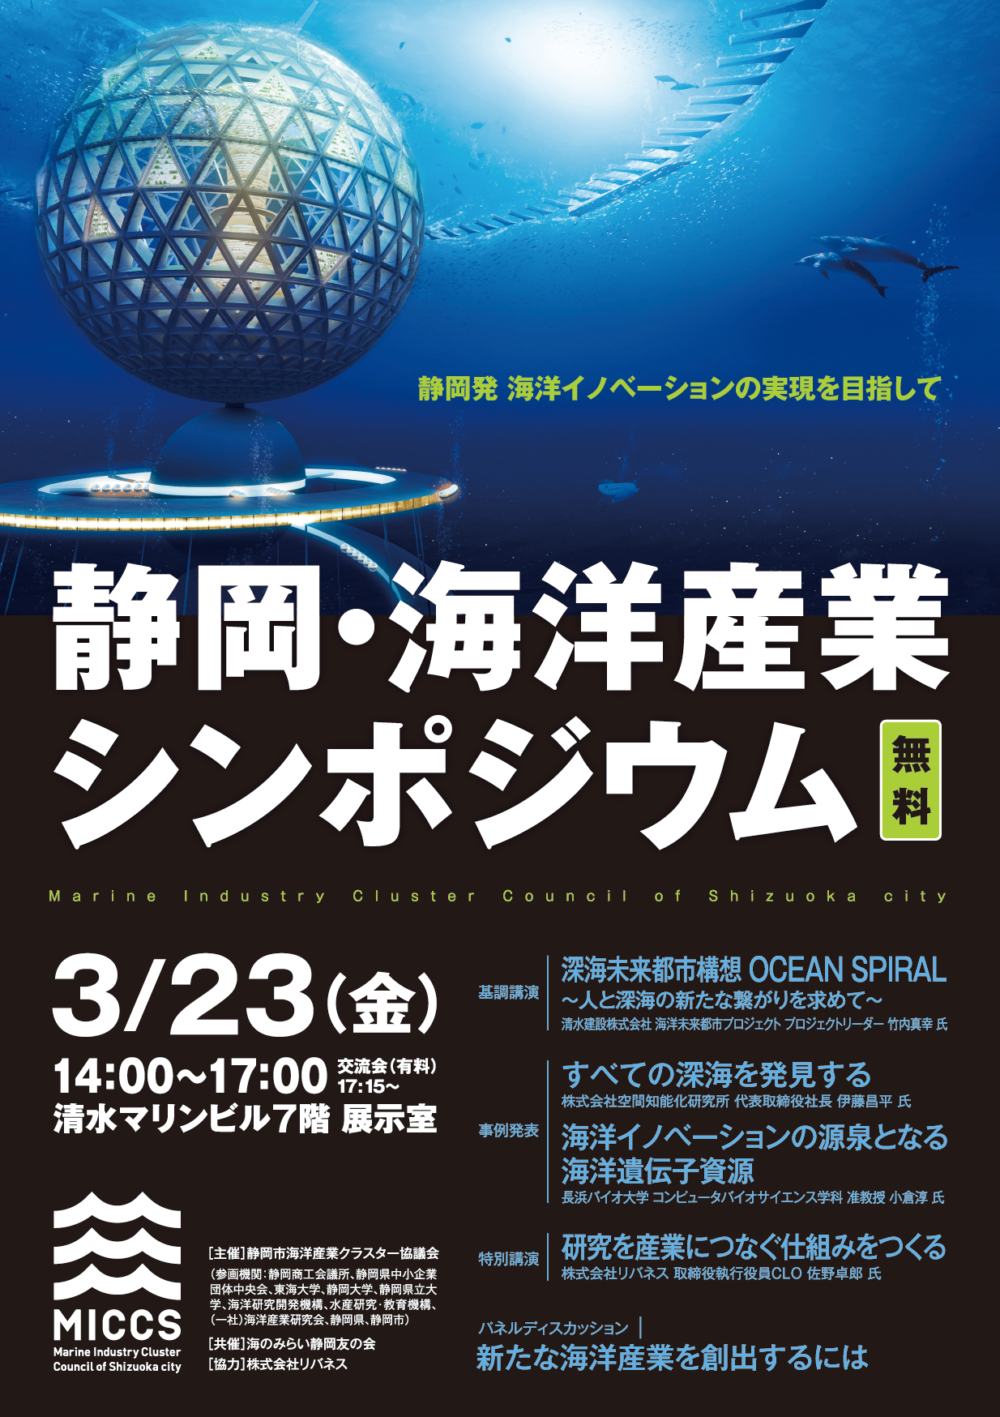 平成29年度 静岡・海洋産業シンポジウムを開催します。（参加無料）